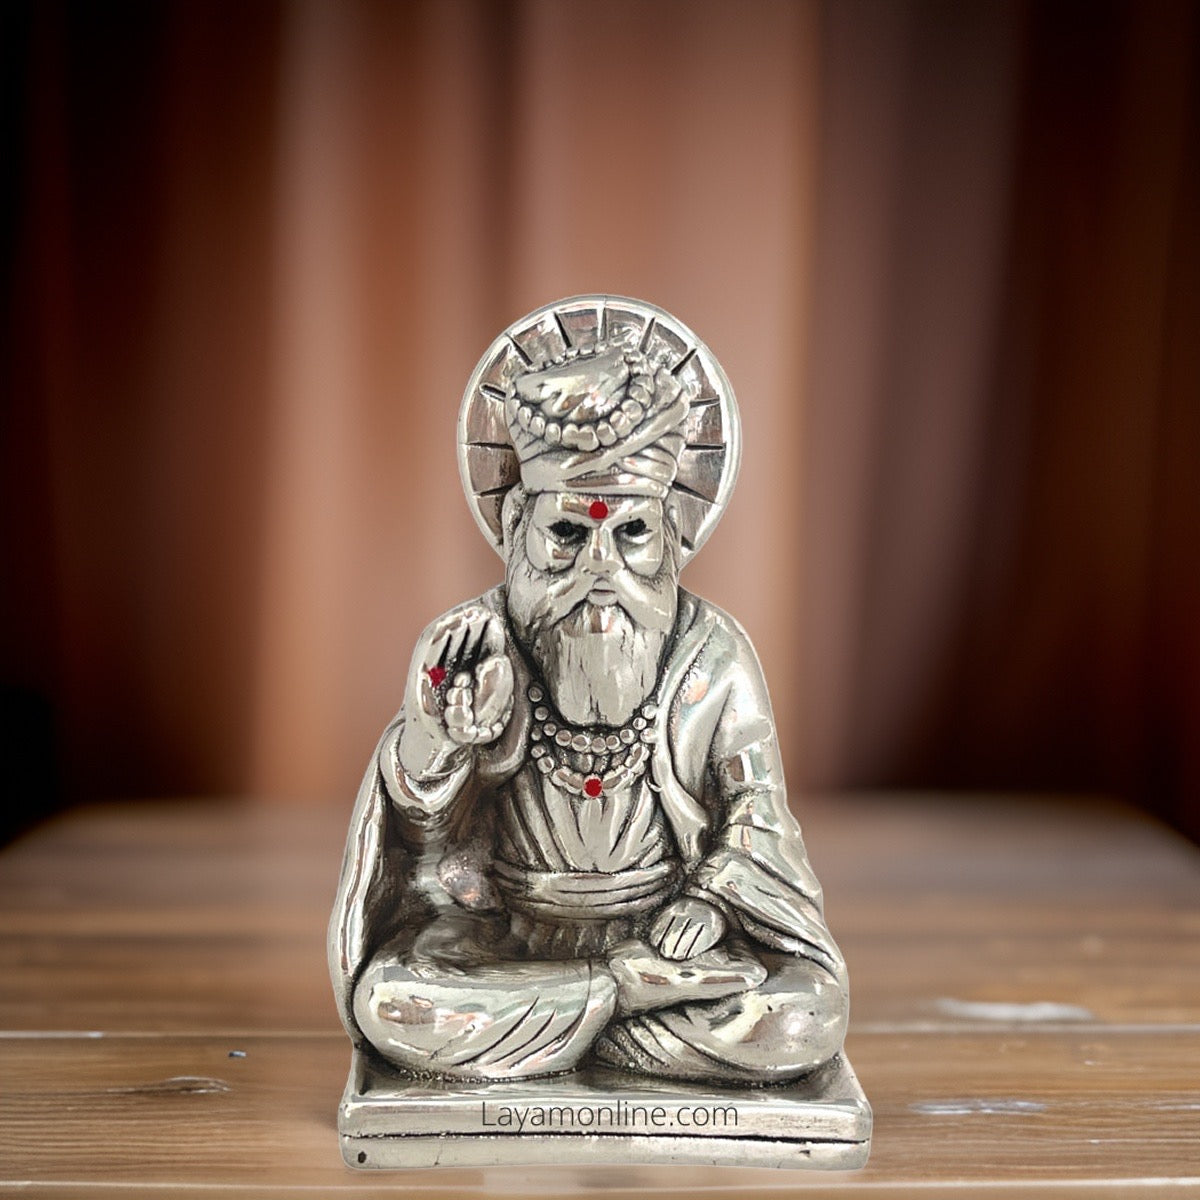 Antique 999 Fine Silver Guru Nanak Idol